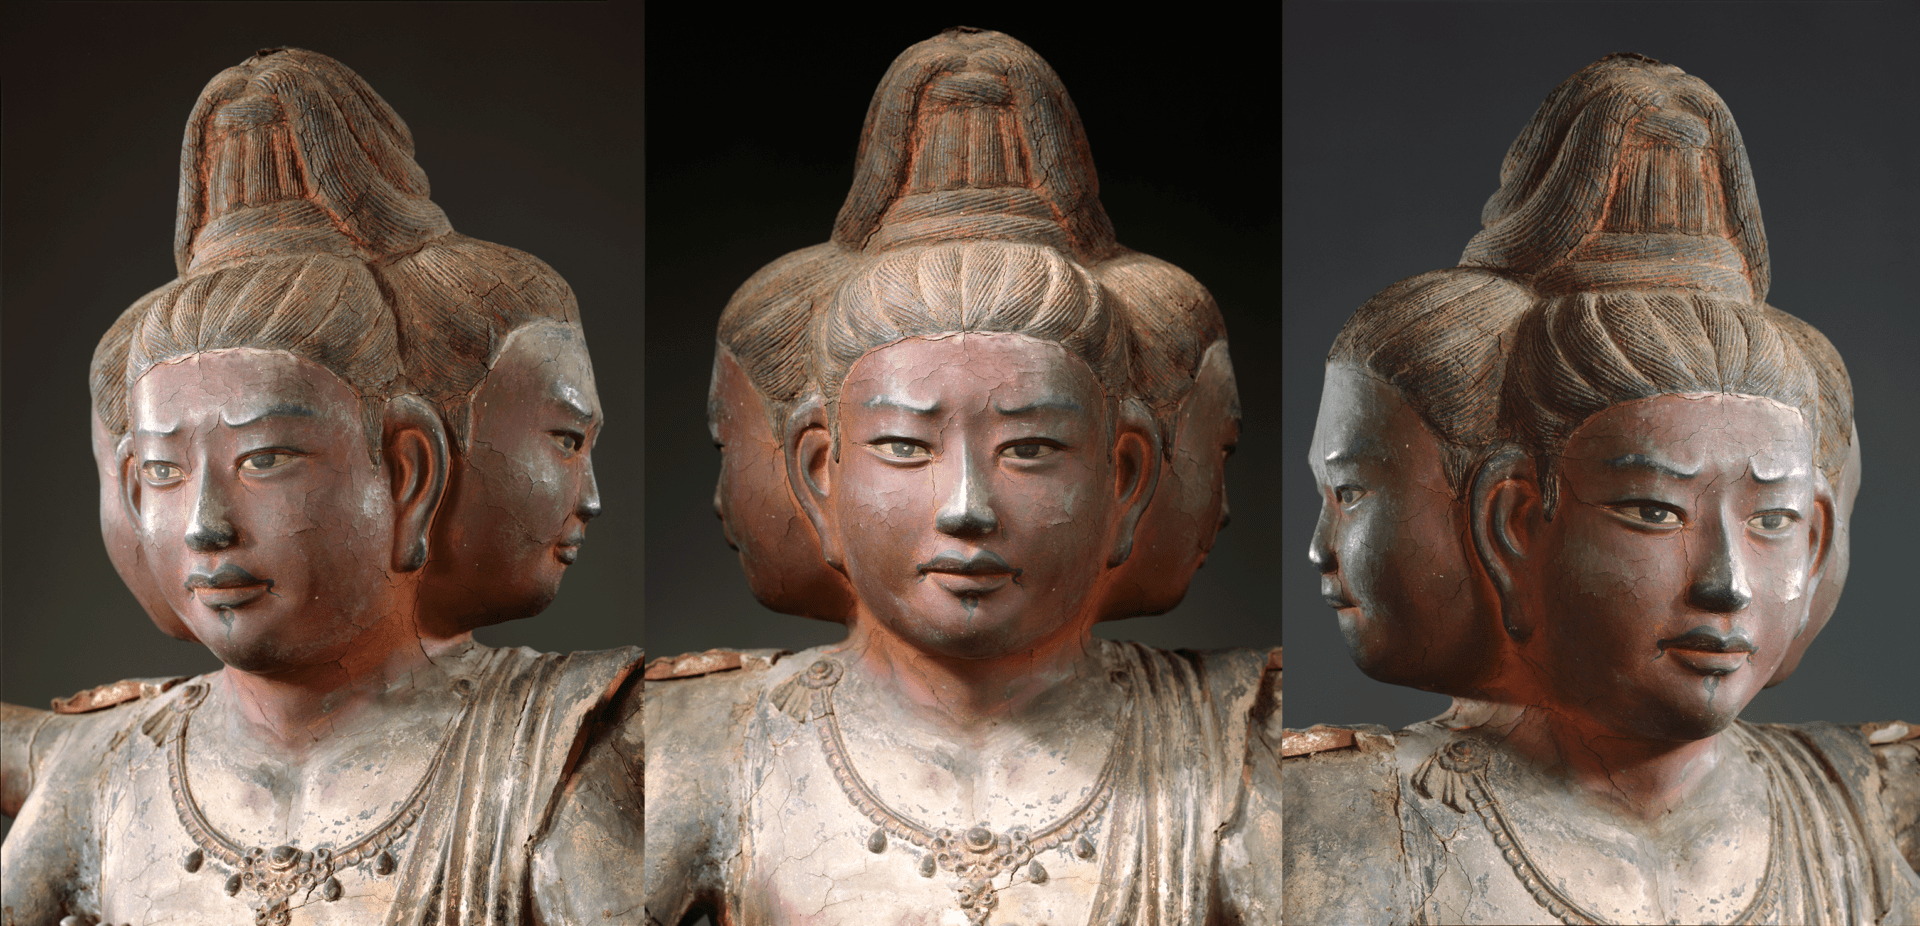 興福寺の阿修羅像の三つの顔はどんな表情 奈良大学がaiで表現を解析 Webマガジン Axis デザインのwebメディア